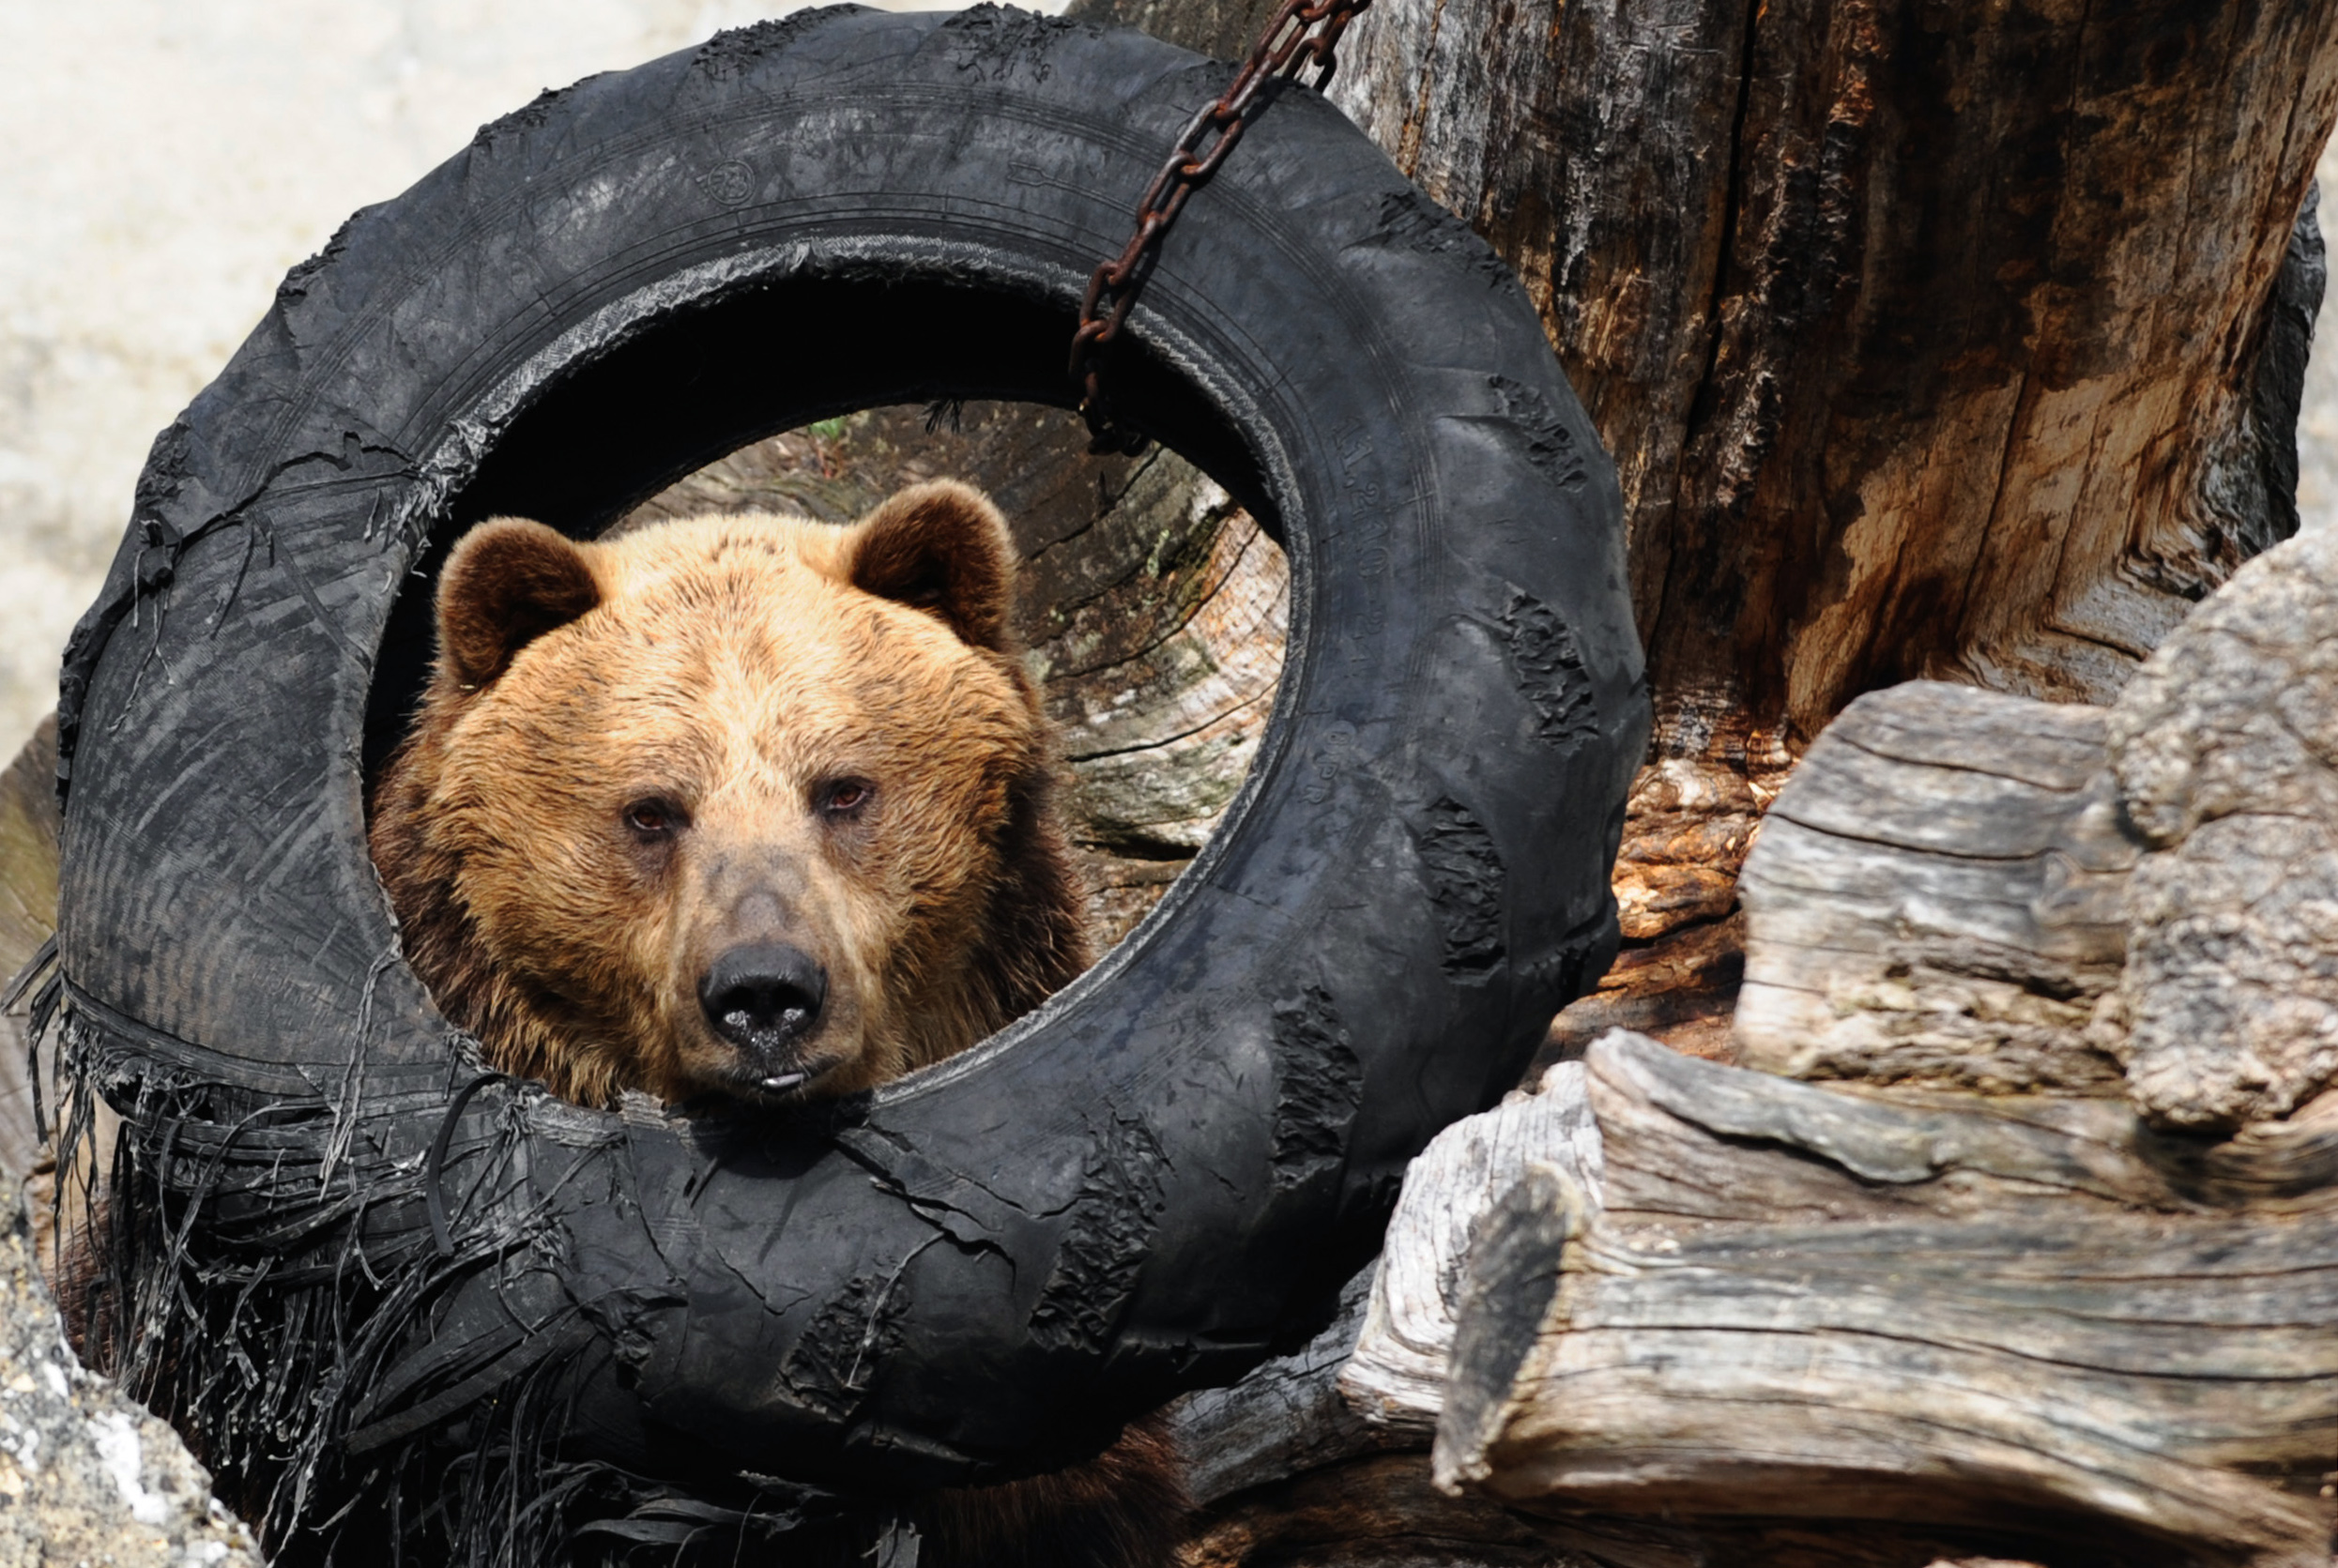 A bocsával együtt gázoltak el egy medvét Szlovákiában